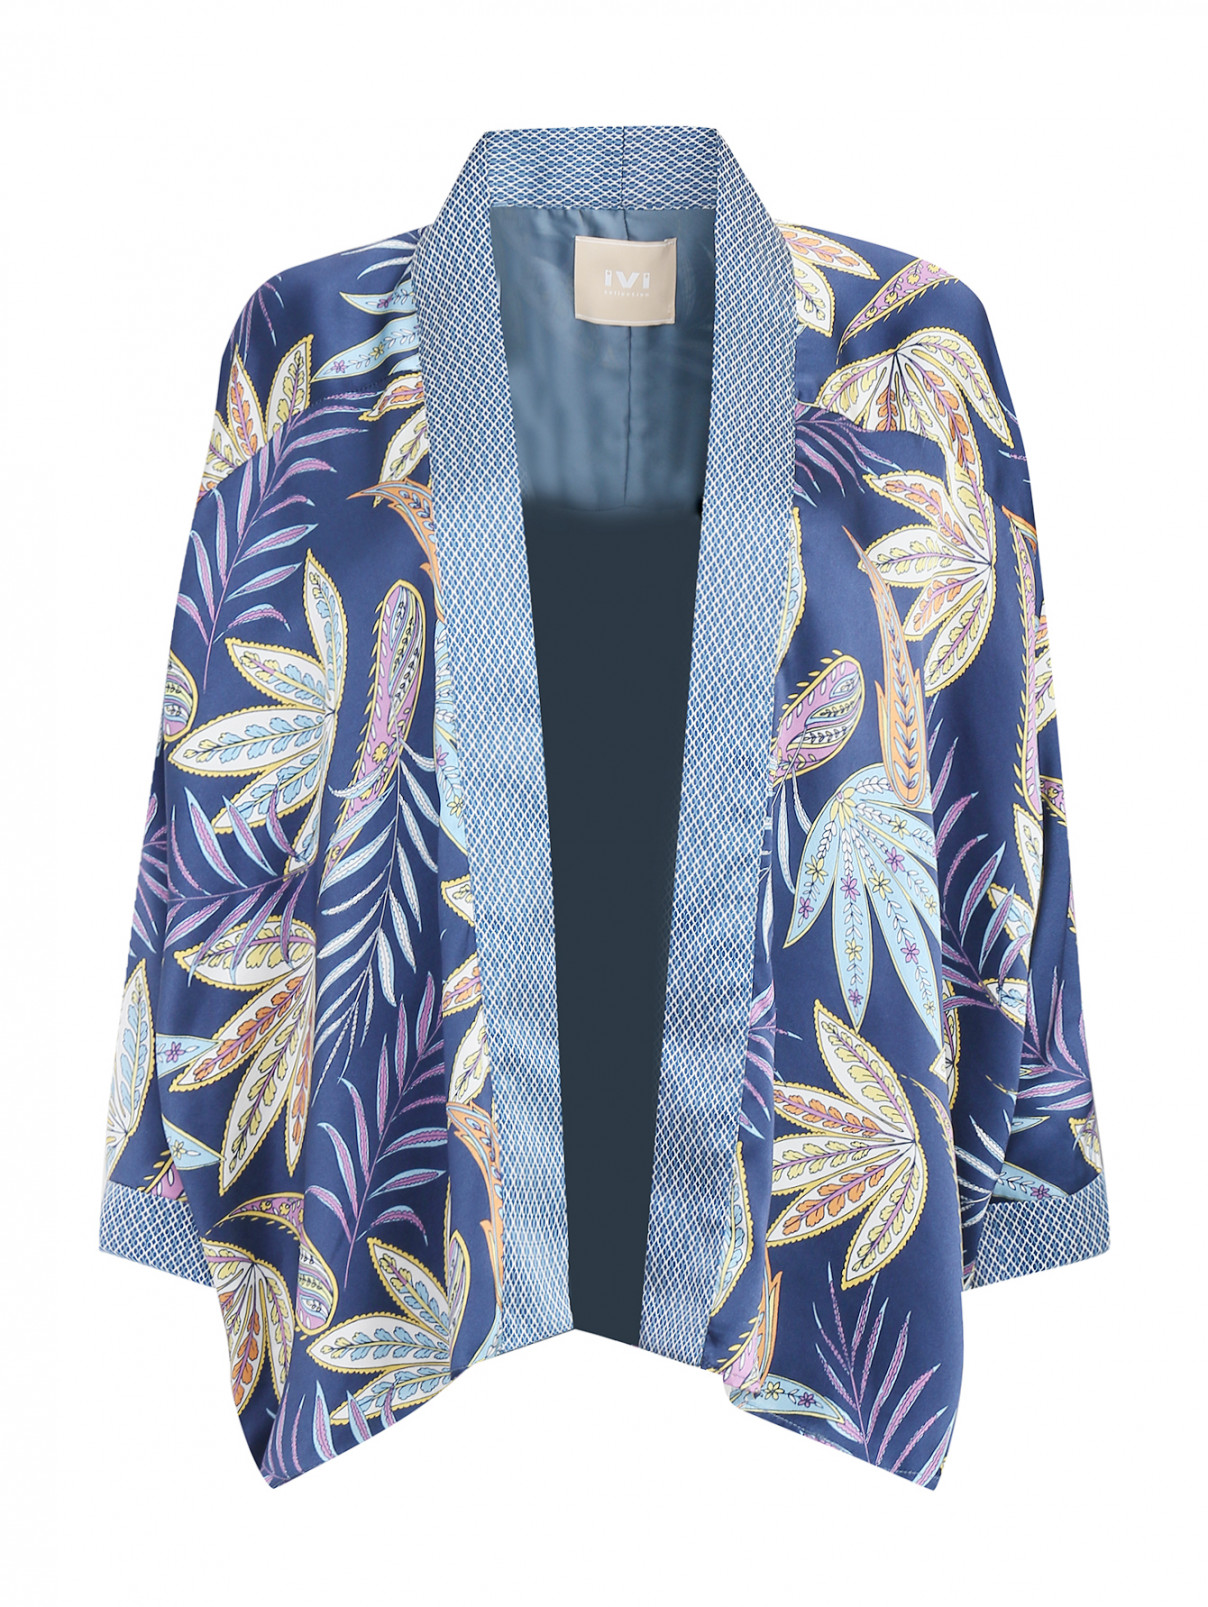 Блуза из шелка с абстрактным узором IVI collection  –  Общий вид  – Цвет:  Узор